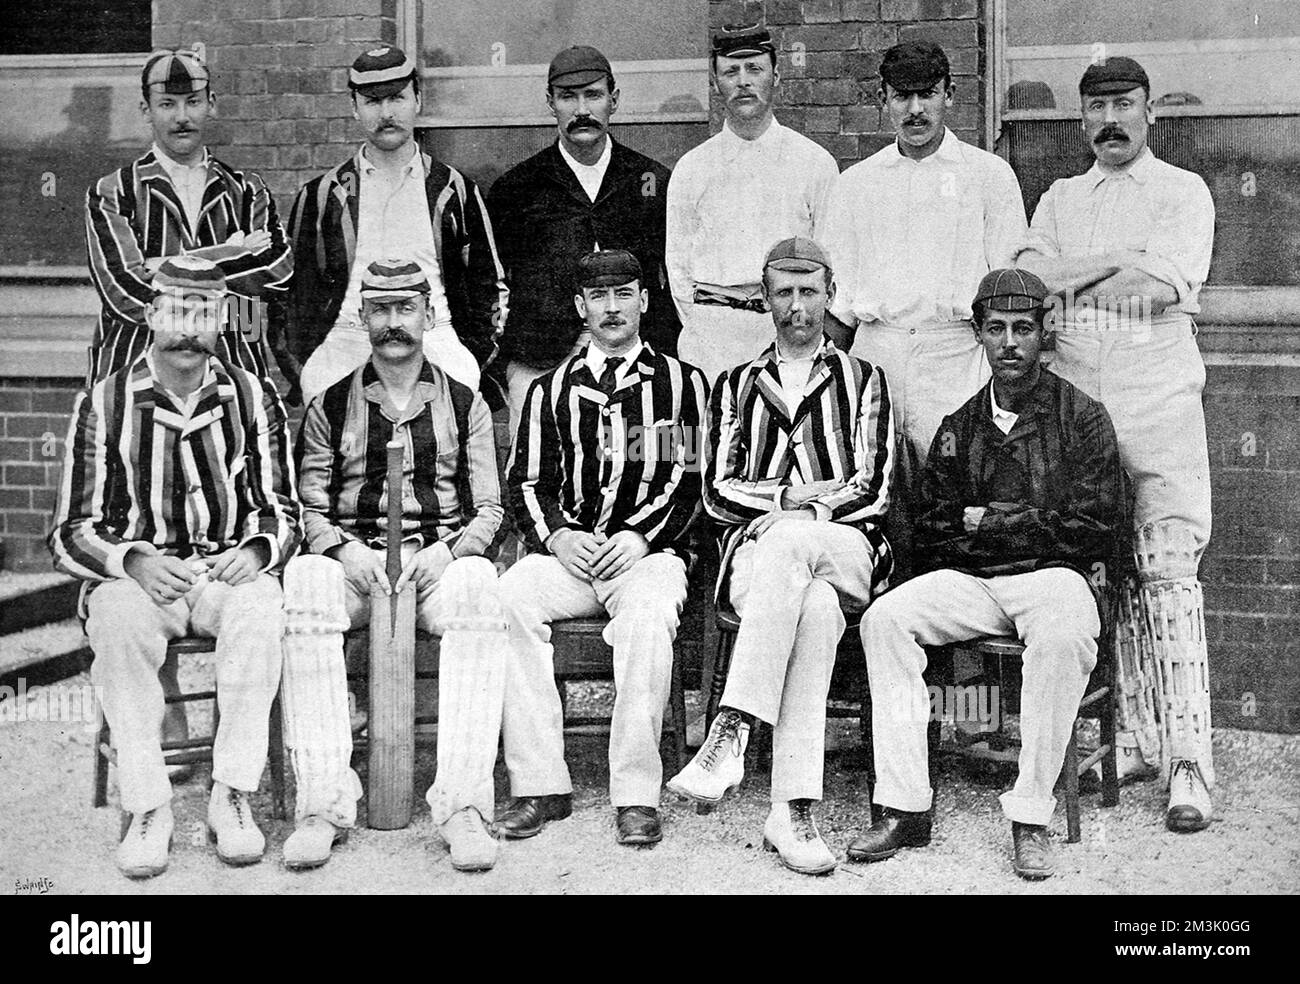 Foto des Cricket-Teams von Middlesex County für die Saison 1892. Hintere Reihe, von links nach rechts: R.S. Lucas, T.C. O'Brien, Phillips, West, Hearne, Rawlin. Erste Reihe, von links nach rechts: A.E. Stoddart, S. W. Scott, A.J. Webbe (Captain), E.A. Nepeanisch, P.J.T. Henery. Stockfoto